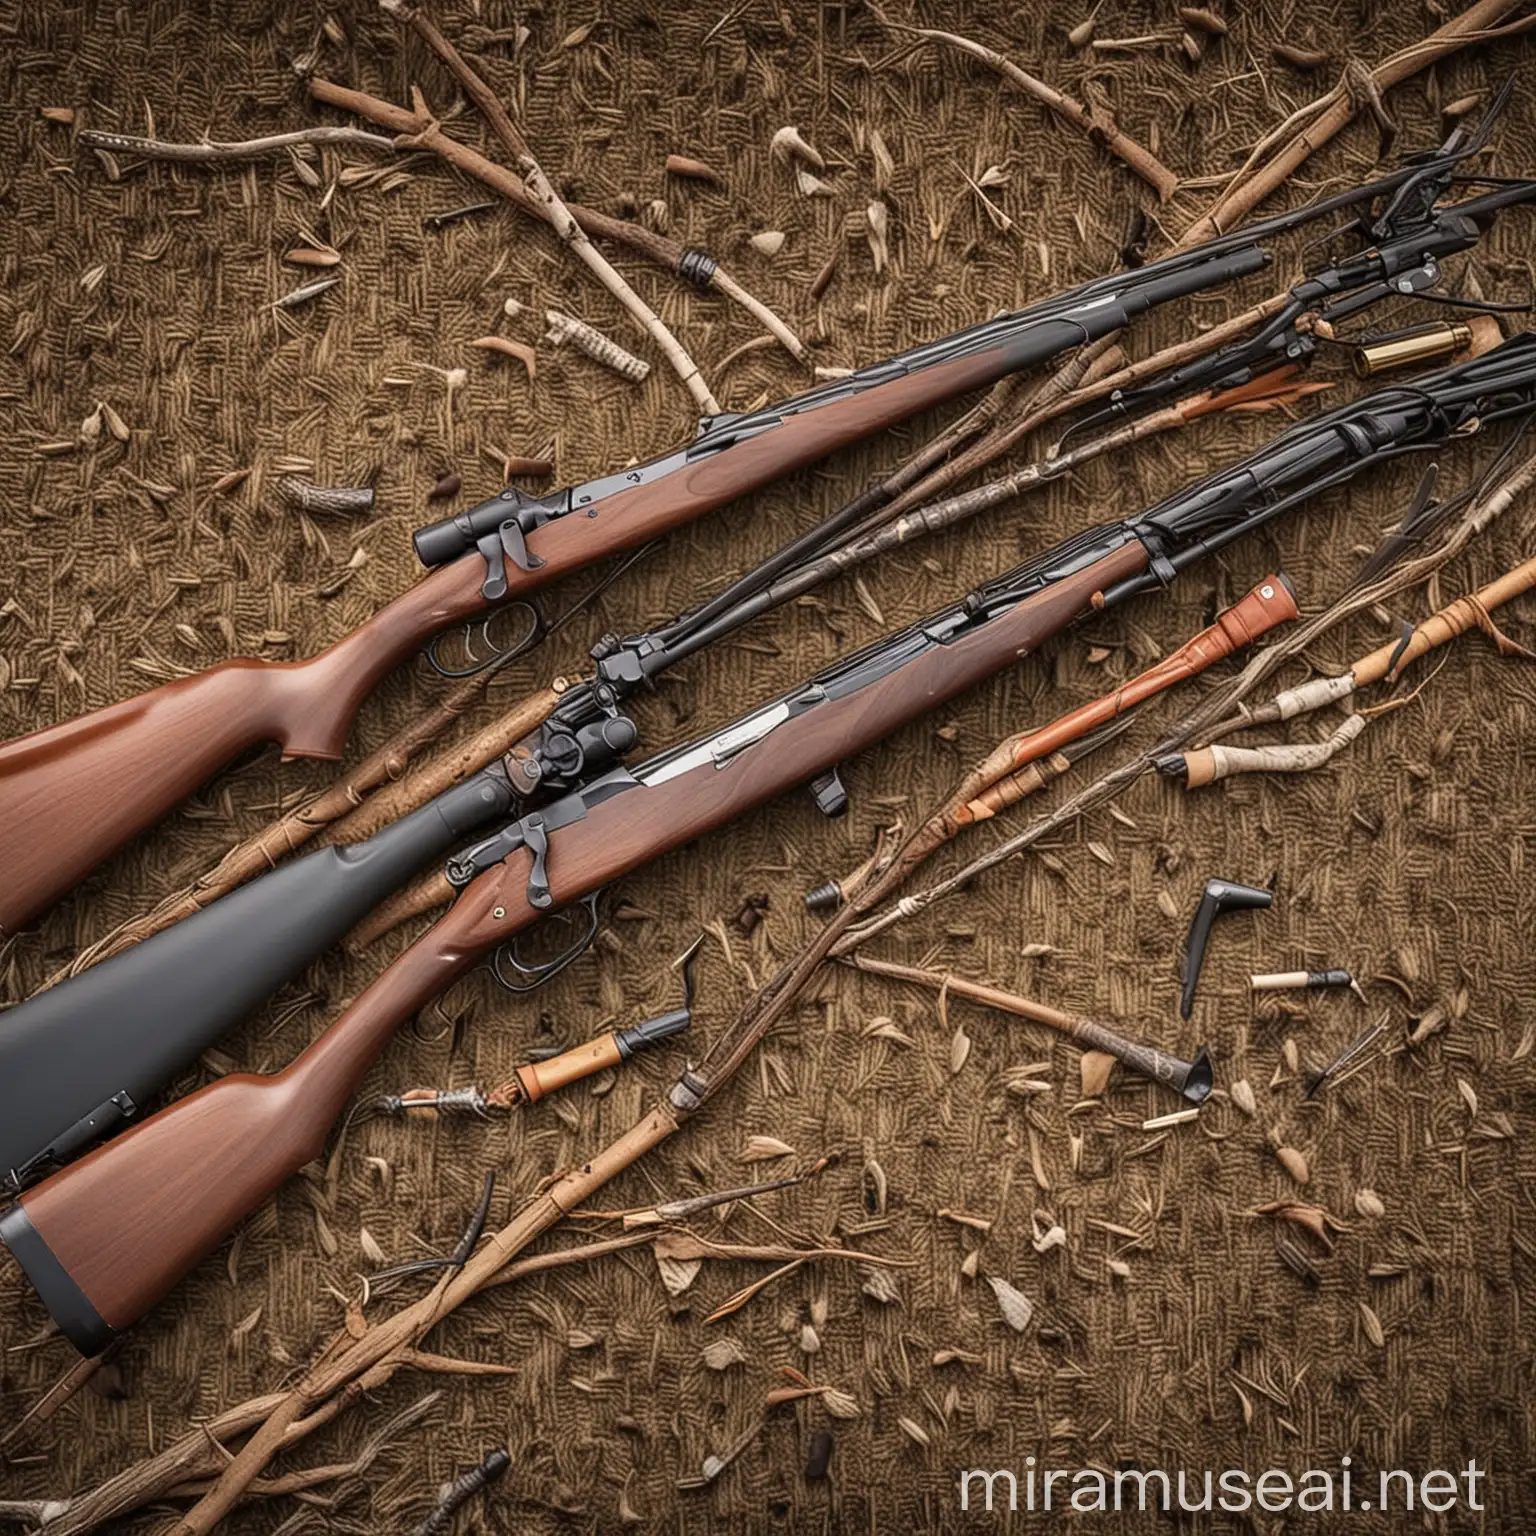 A hunting guns other than rifles and shotguns